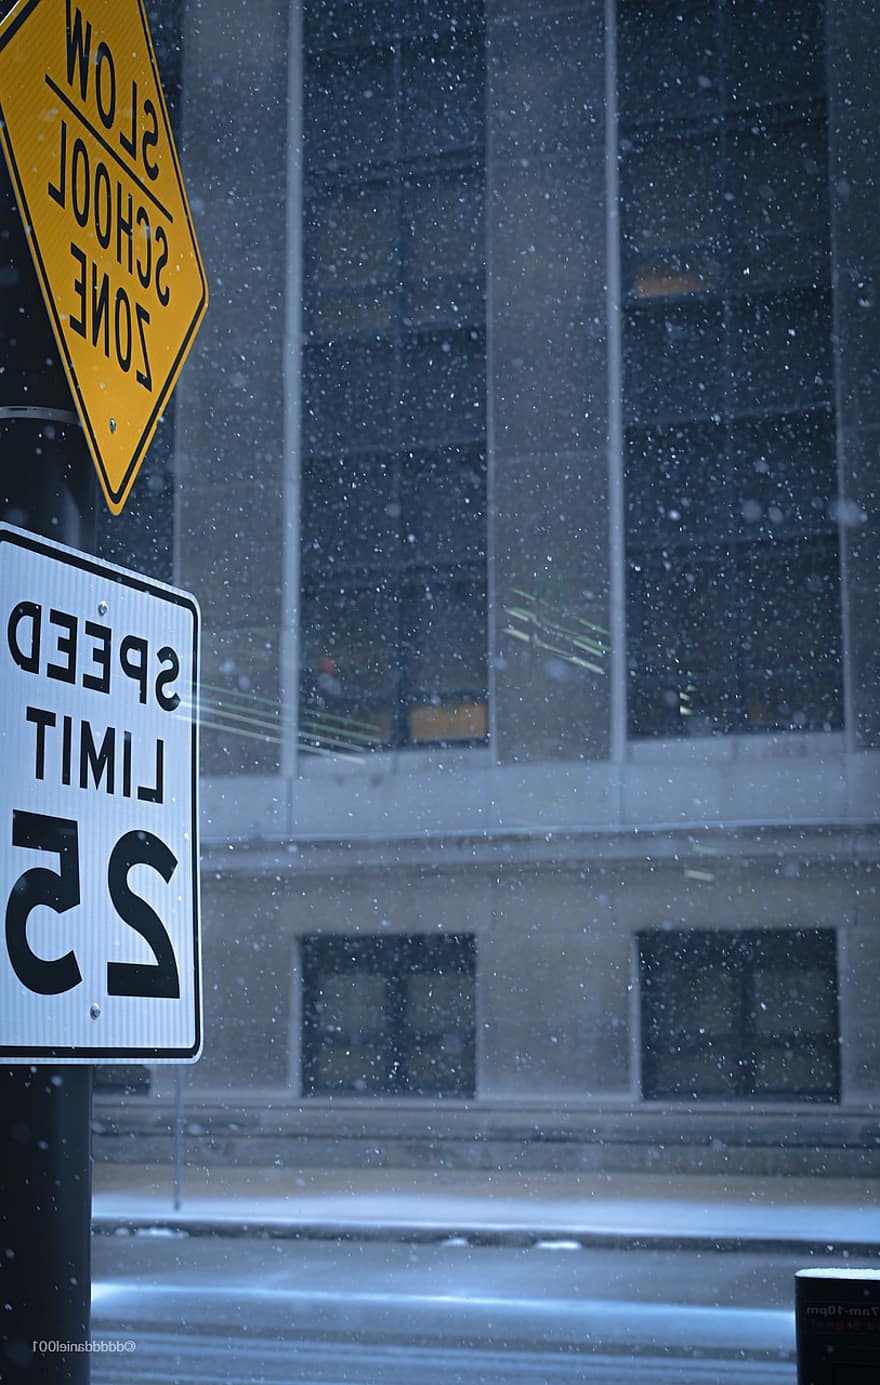 σημάδι, δρόμος, χιόνι, χειμώνας, χιονόπτωση, σήμα κυκλοφορίας, πινακίδα, όριο ταχύτητας, σχολική ζώνη, σε εξωτερικό χώρο, καιρός